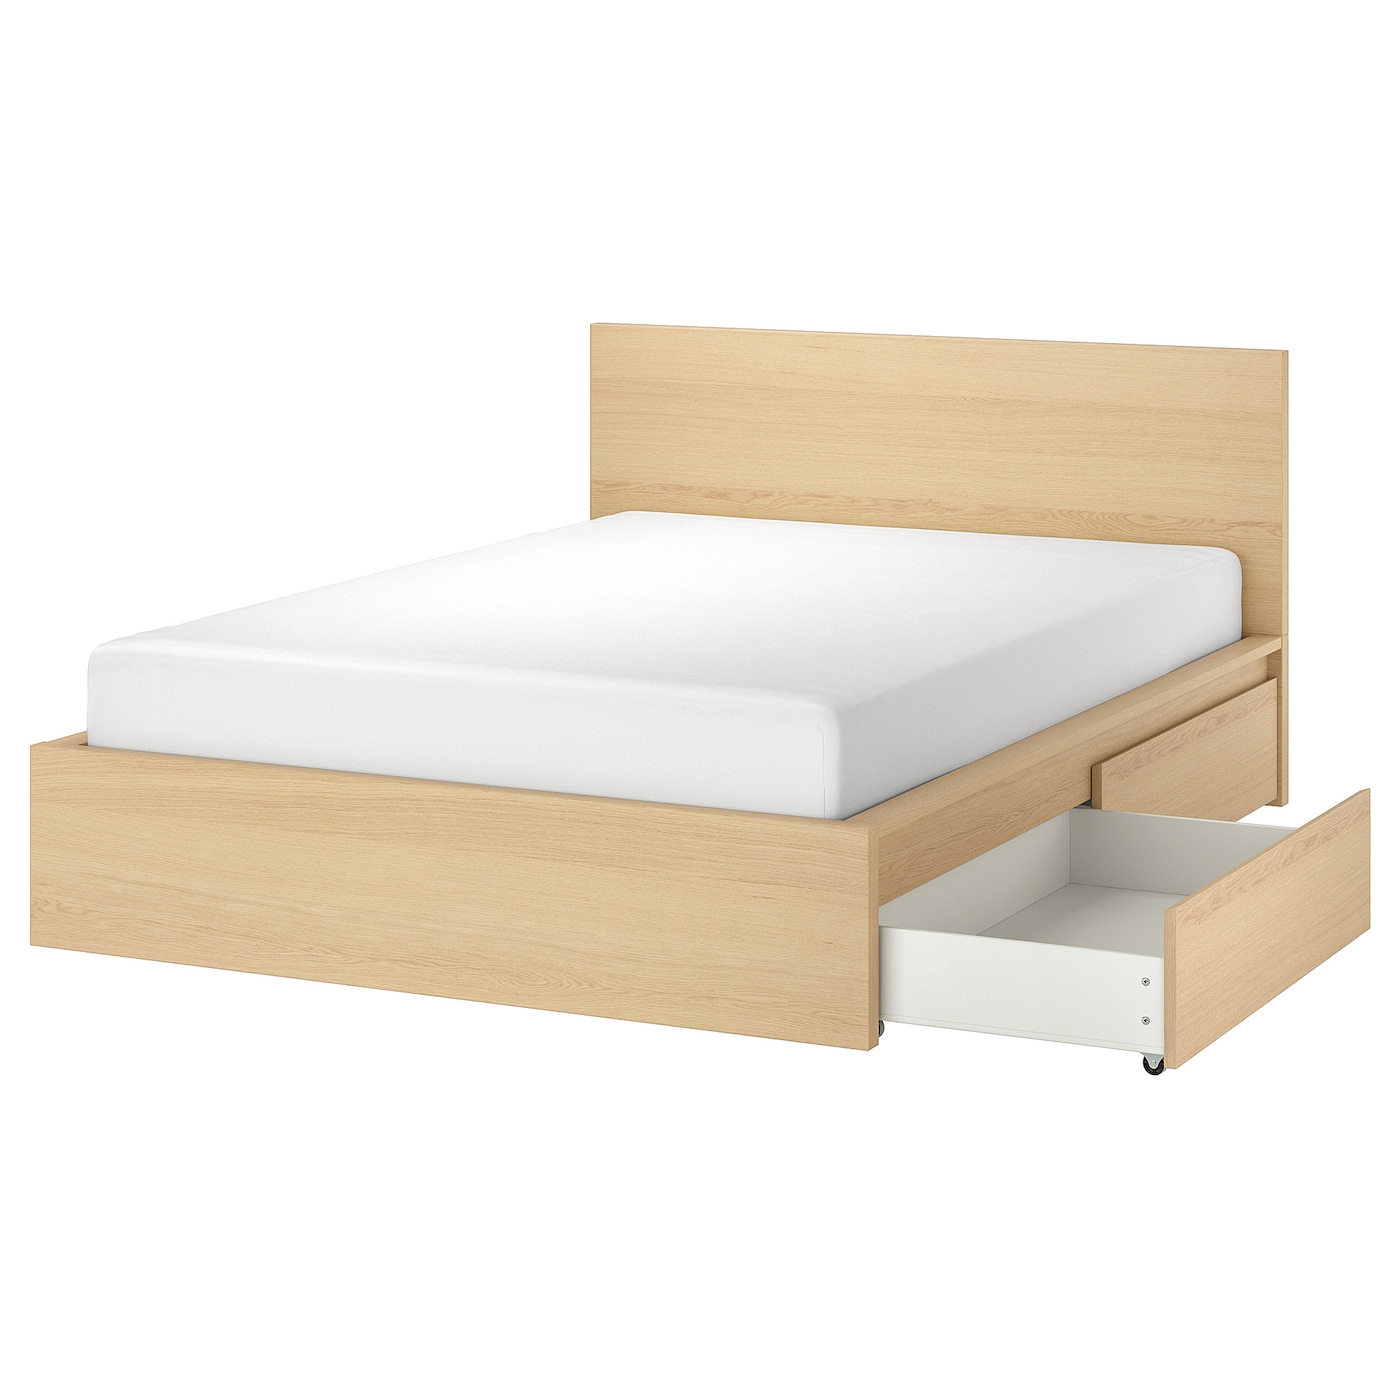 Каркас кровати с 4 ящиками для хранения - IKEA MALM, 200х140 см, под беленый дуб, МАЛЬМ ИКЕА